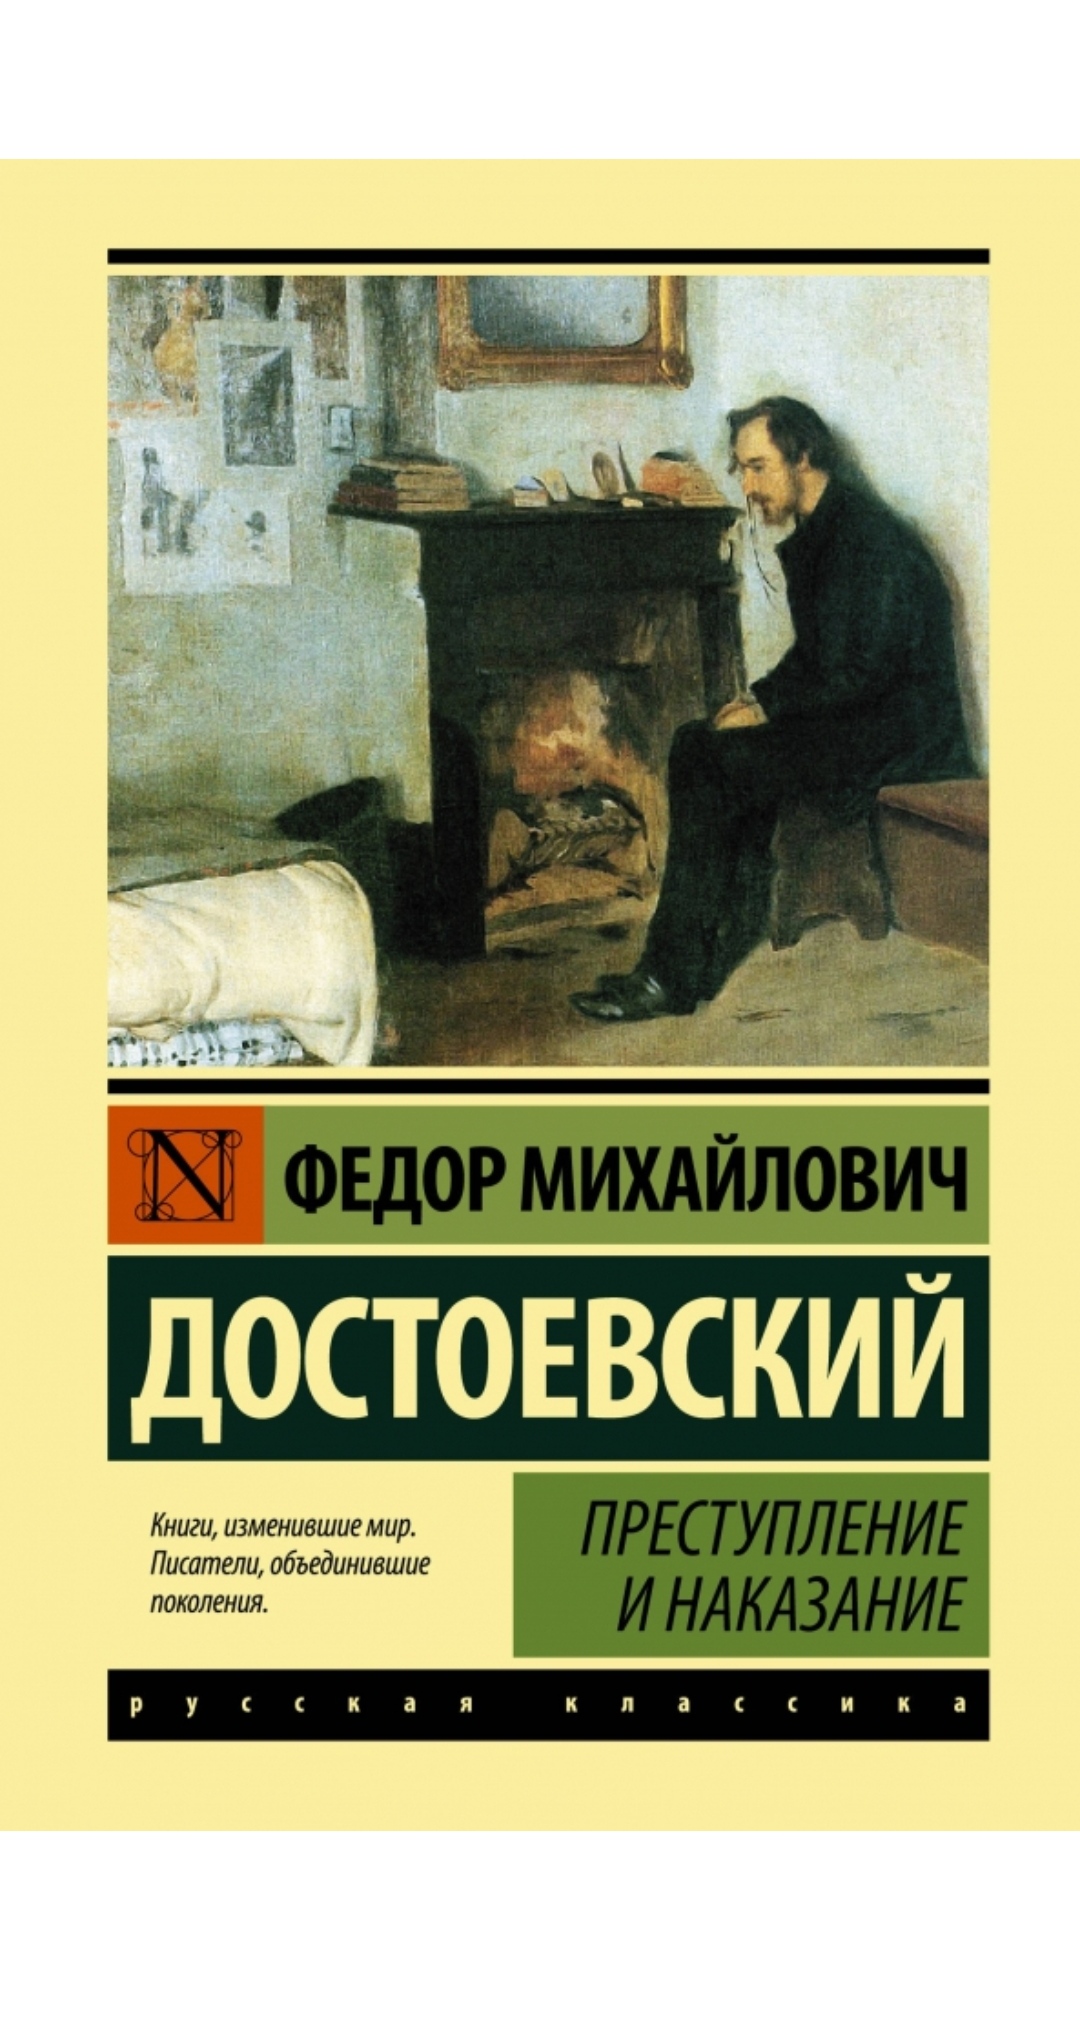 Достоевский преступление и наказание книги изменившие мир